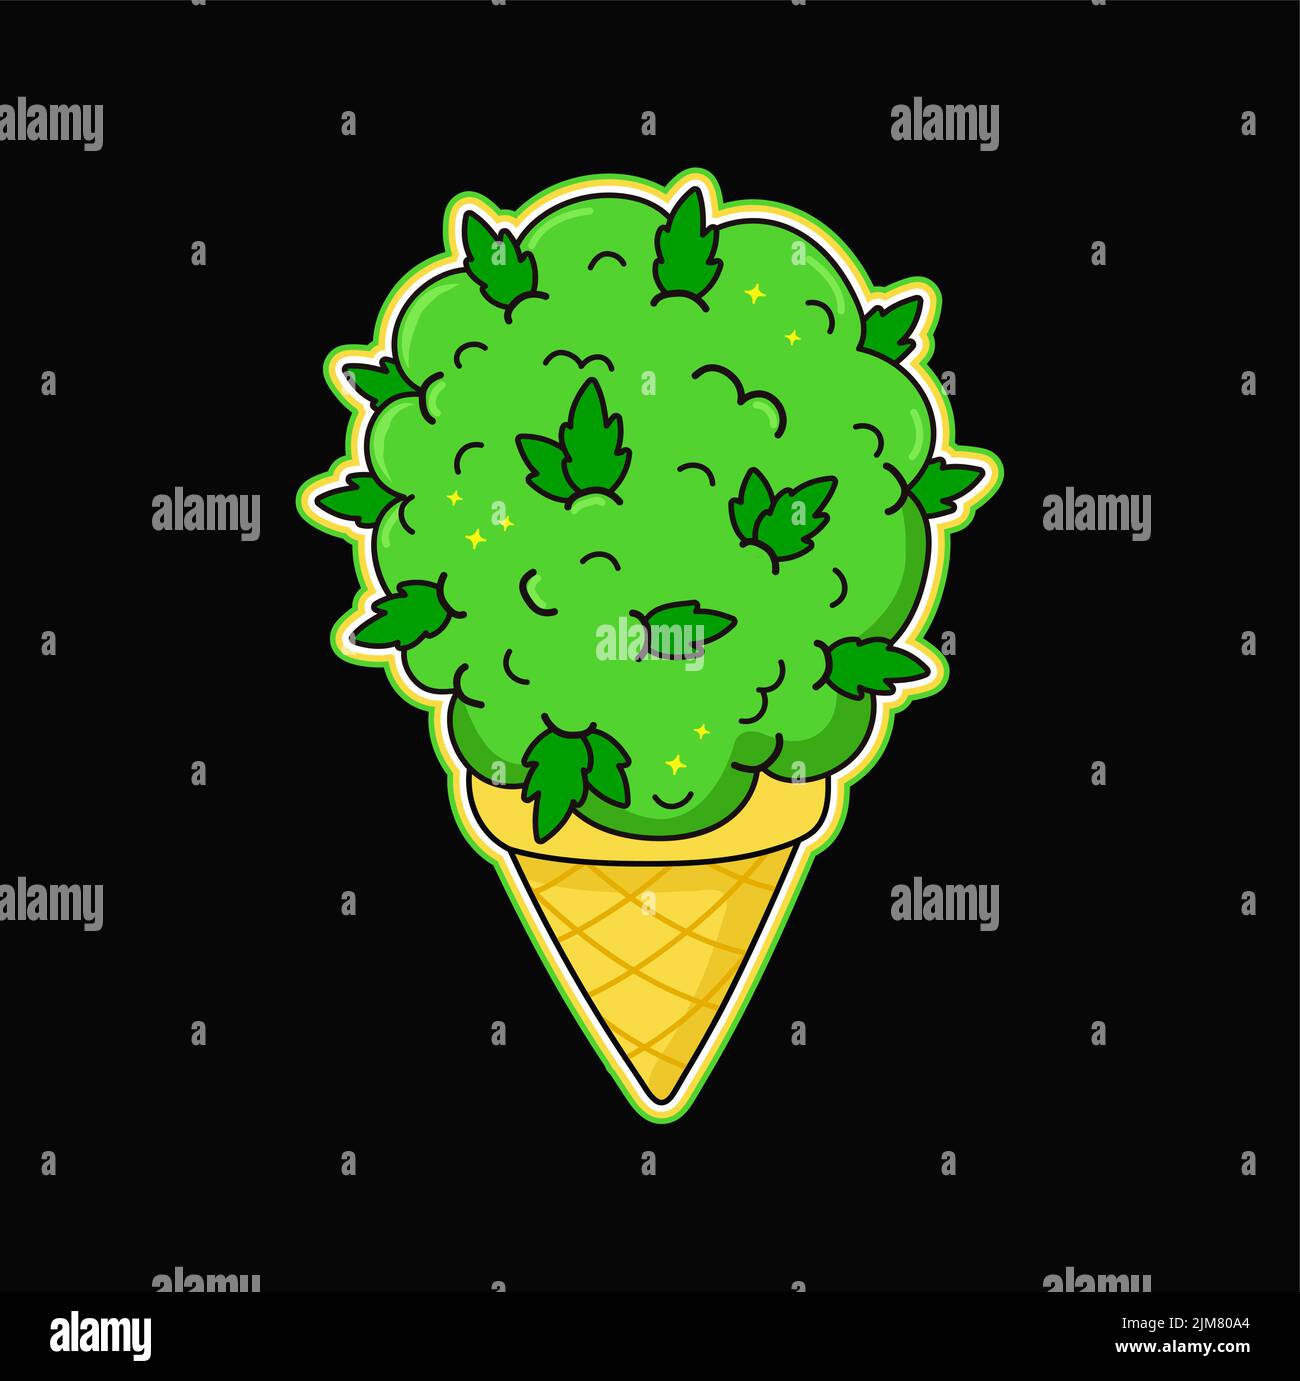 Diseño de camiseta con estampado de helado de marihuana verde brillante con brotes de marihuana. Ilustración del logotipo de dibujo animado de moda dibujado a mano vectorial. Helado de cannabis, hierba, estampado de marihuana para camiseta, póster, logotipo, concepto de calcomanía Ilustración del Vector